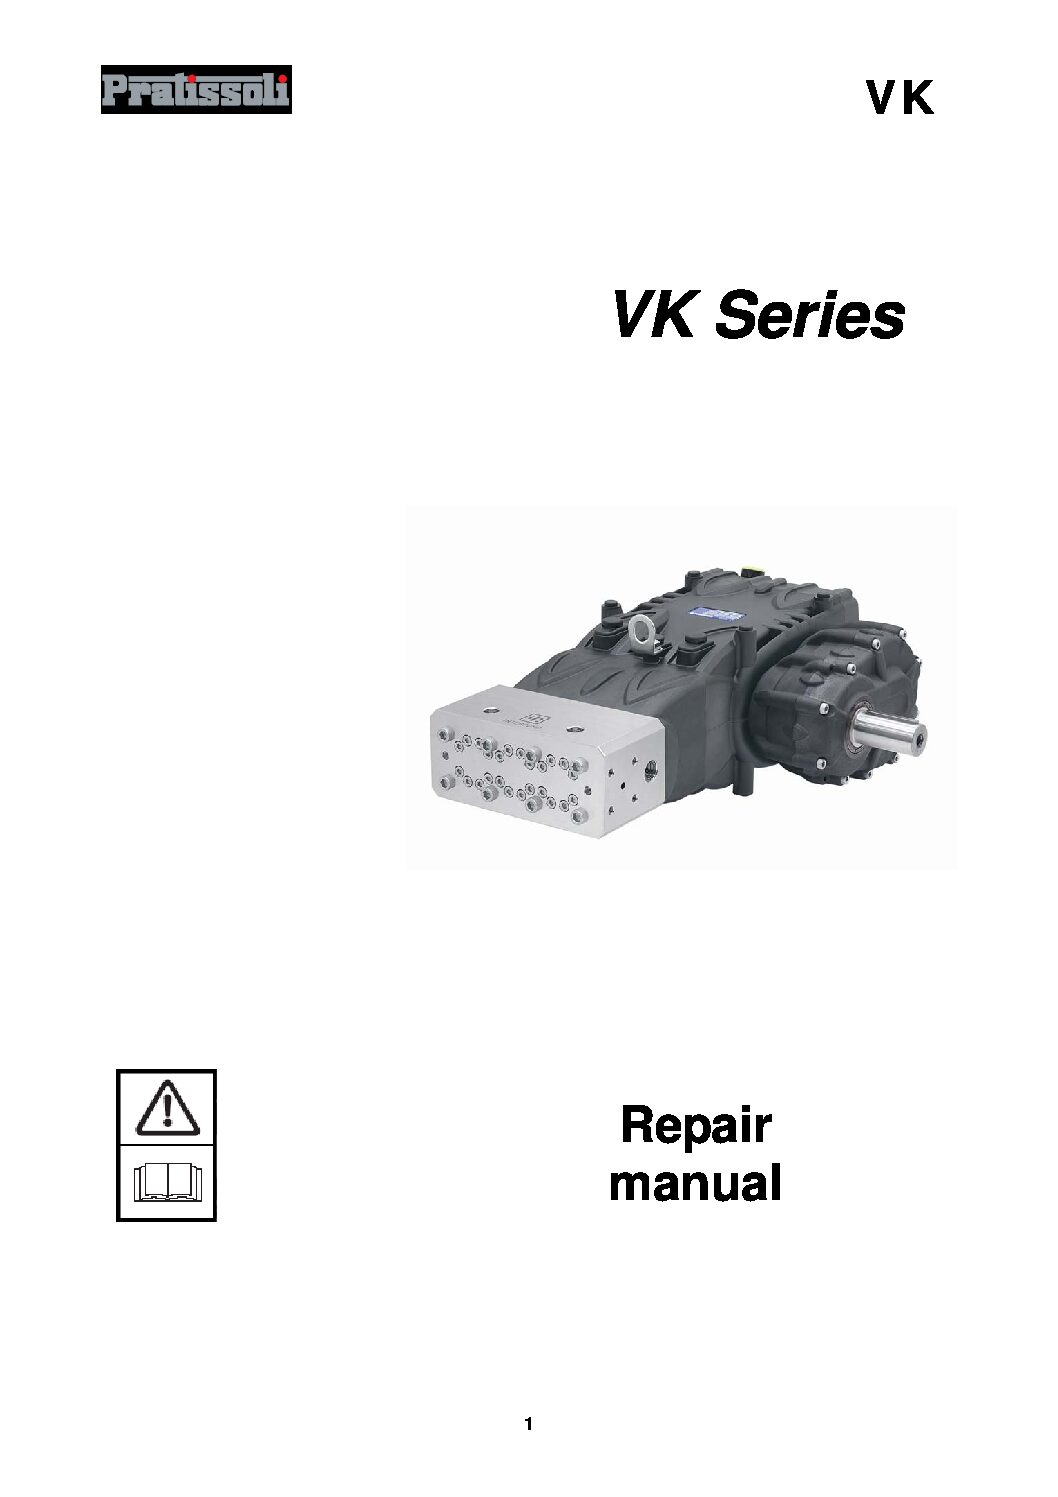 Pratissoli VK Series Triplex Plunger Pumps Repair Manual